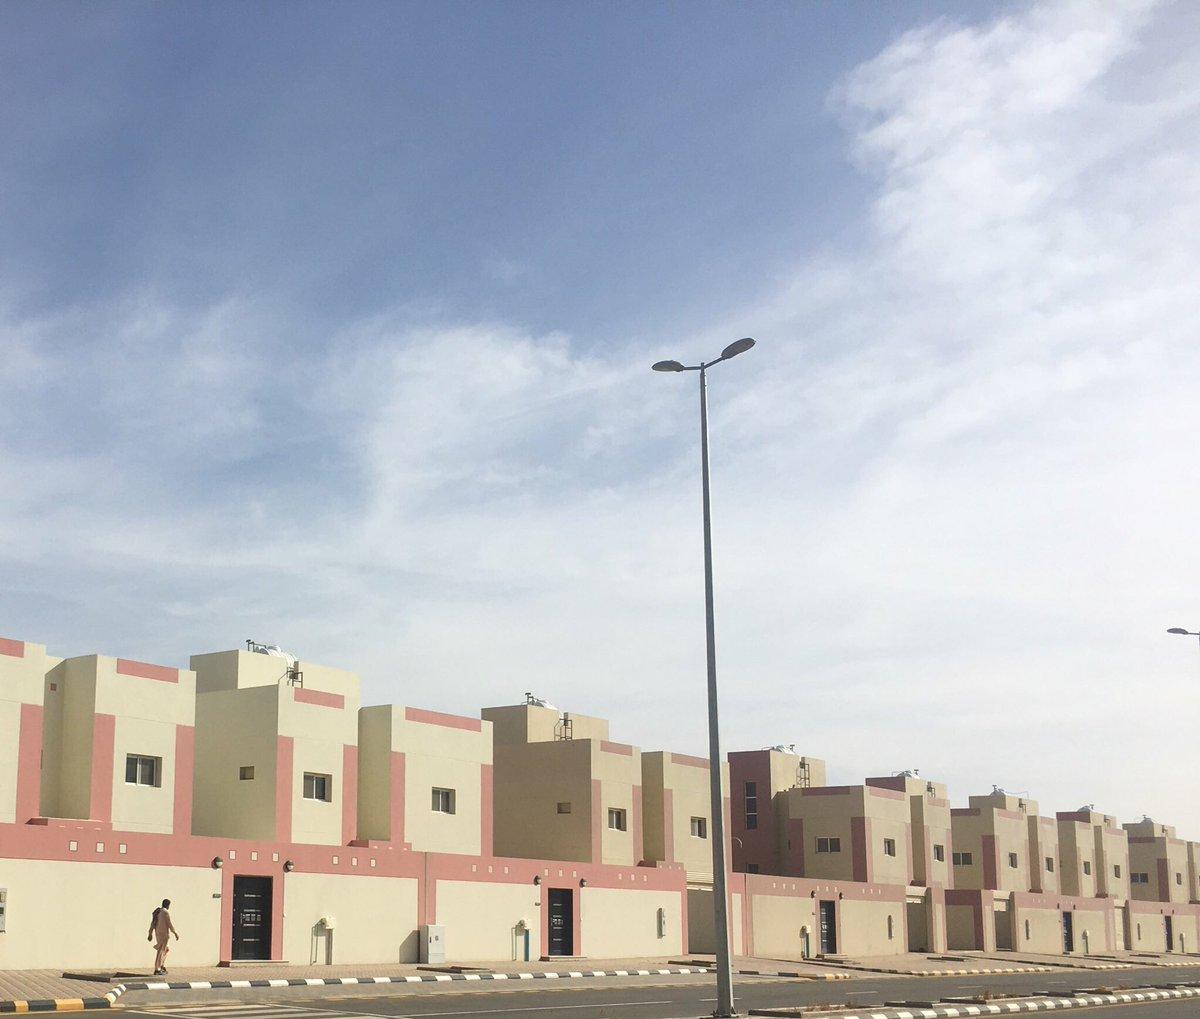 إيجار: إطلاق النسخة الجديدة للعقد السكني في السعودية قريباً